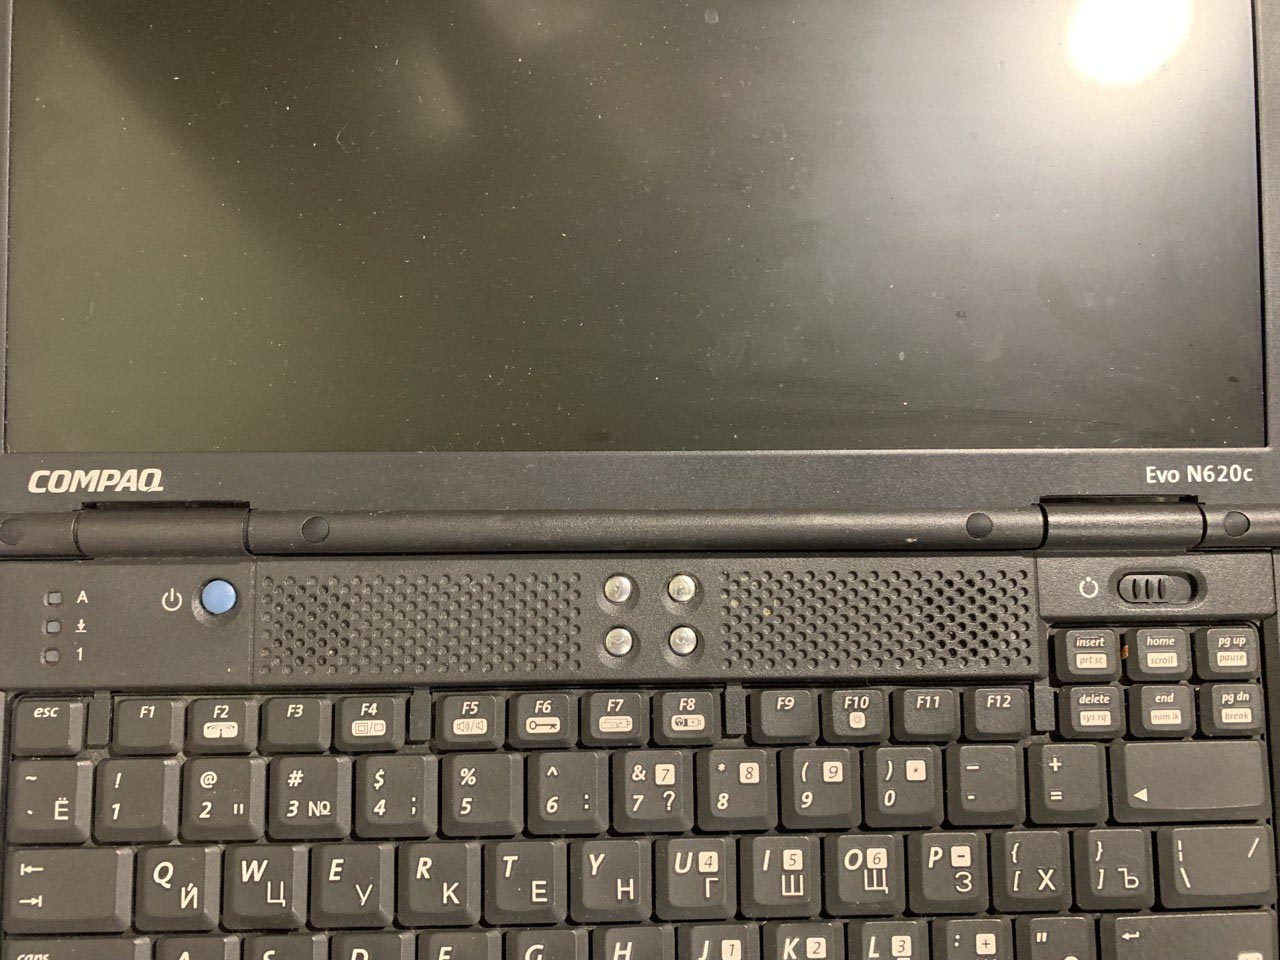 Спасение Евы. Как я восстанавливал винтажный ноутбук Compaq Evo N620c - 8